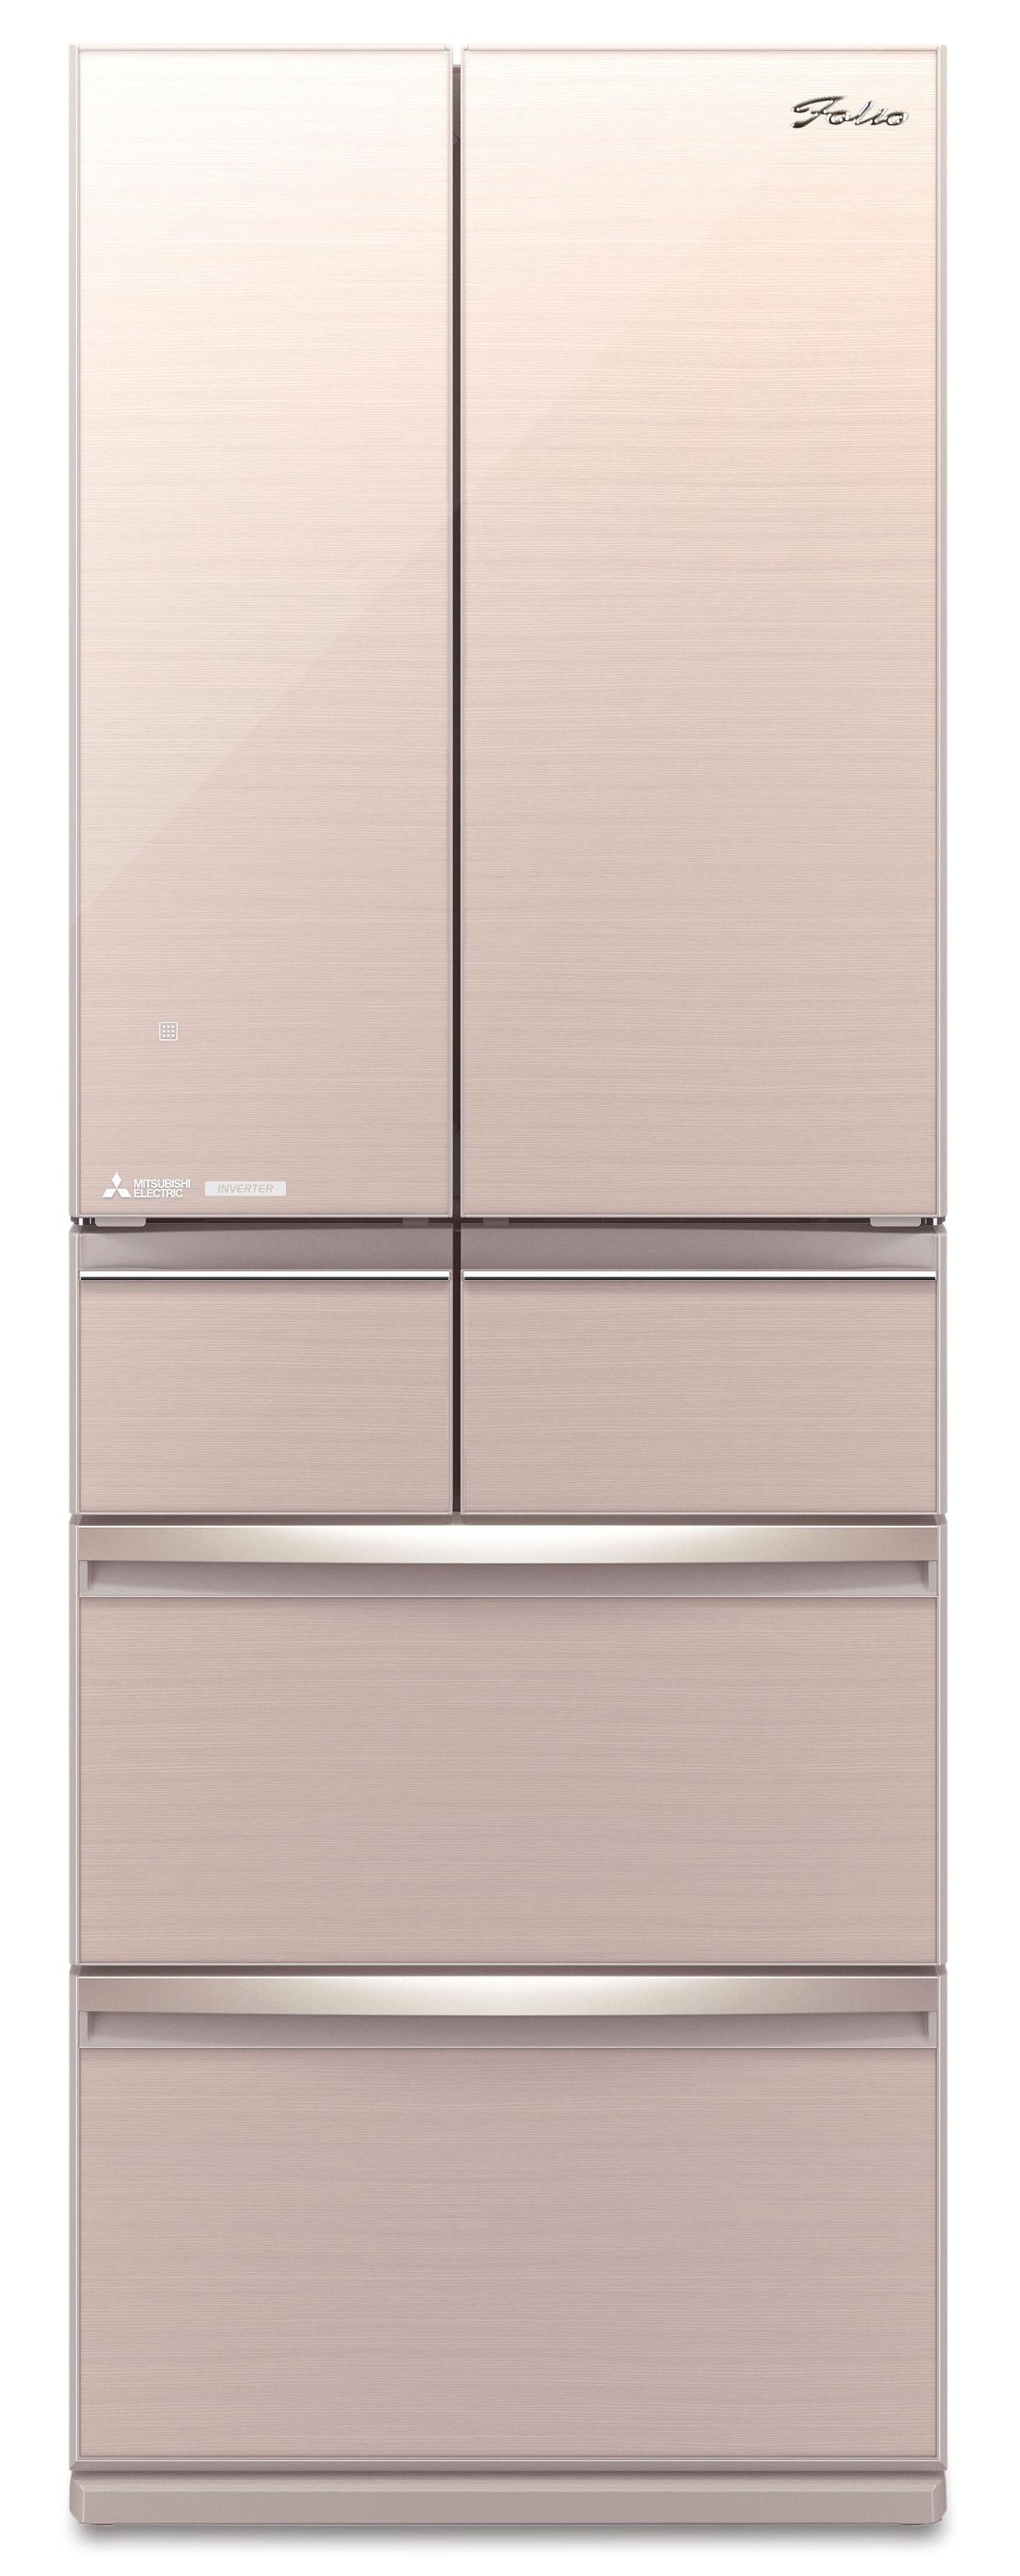 MR-WX52D-F | Refrigerator | Mitsubishi Electric (HK) Ltd.